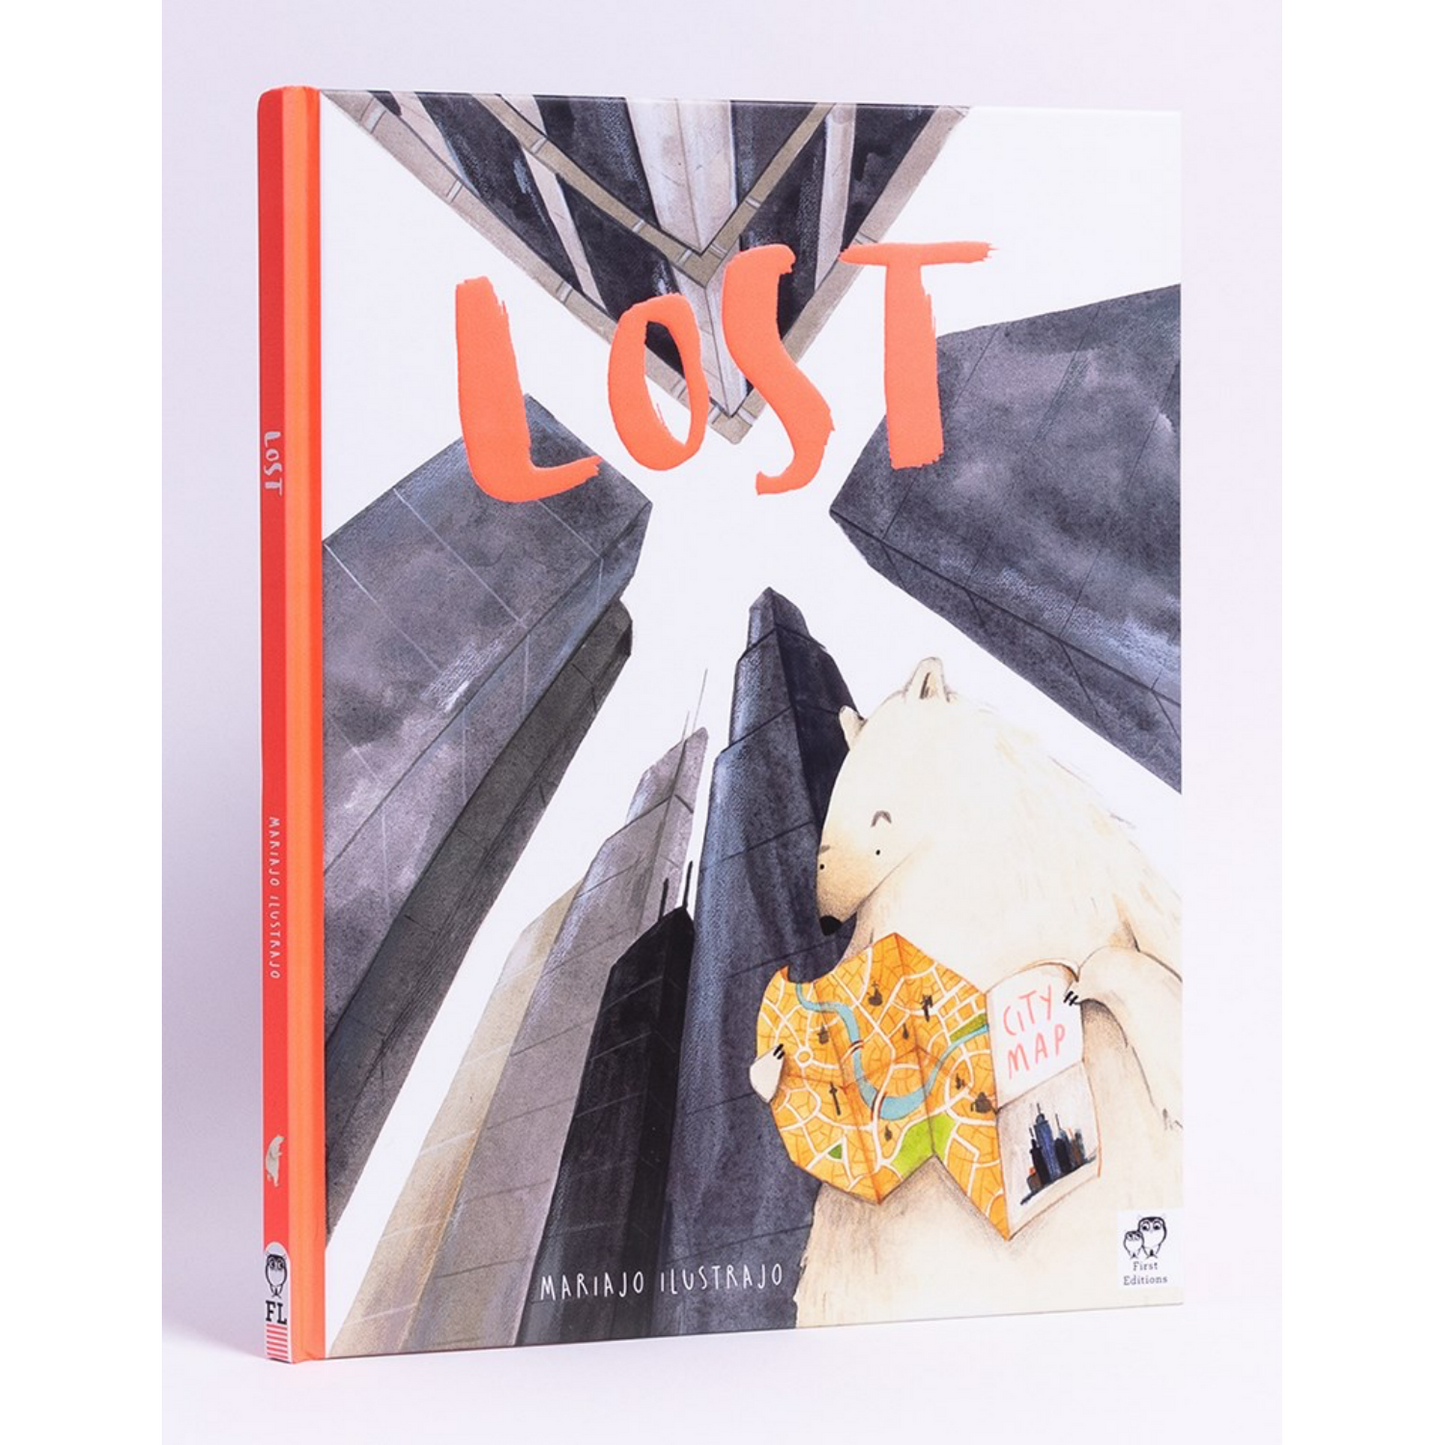 Lost | Hardback | Children's Book on Friendship